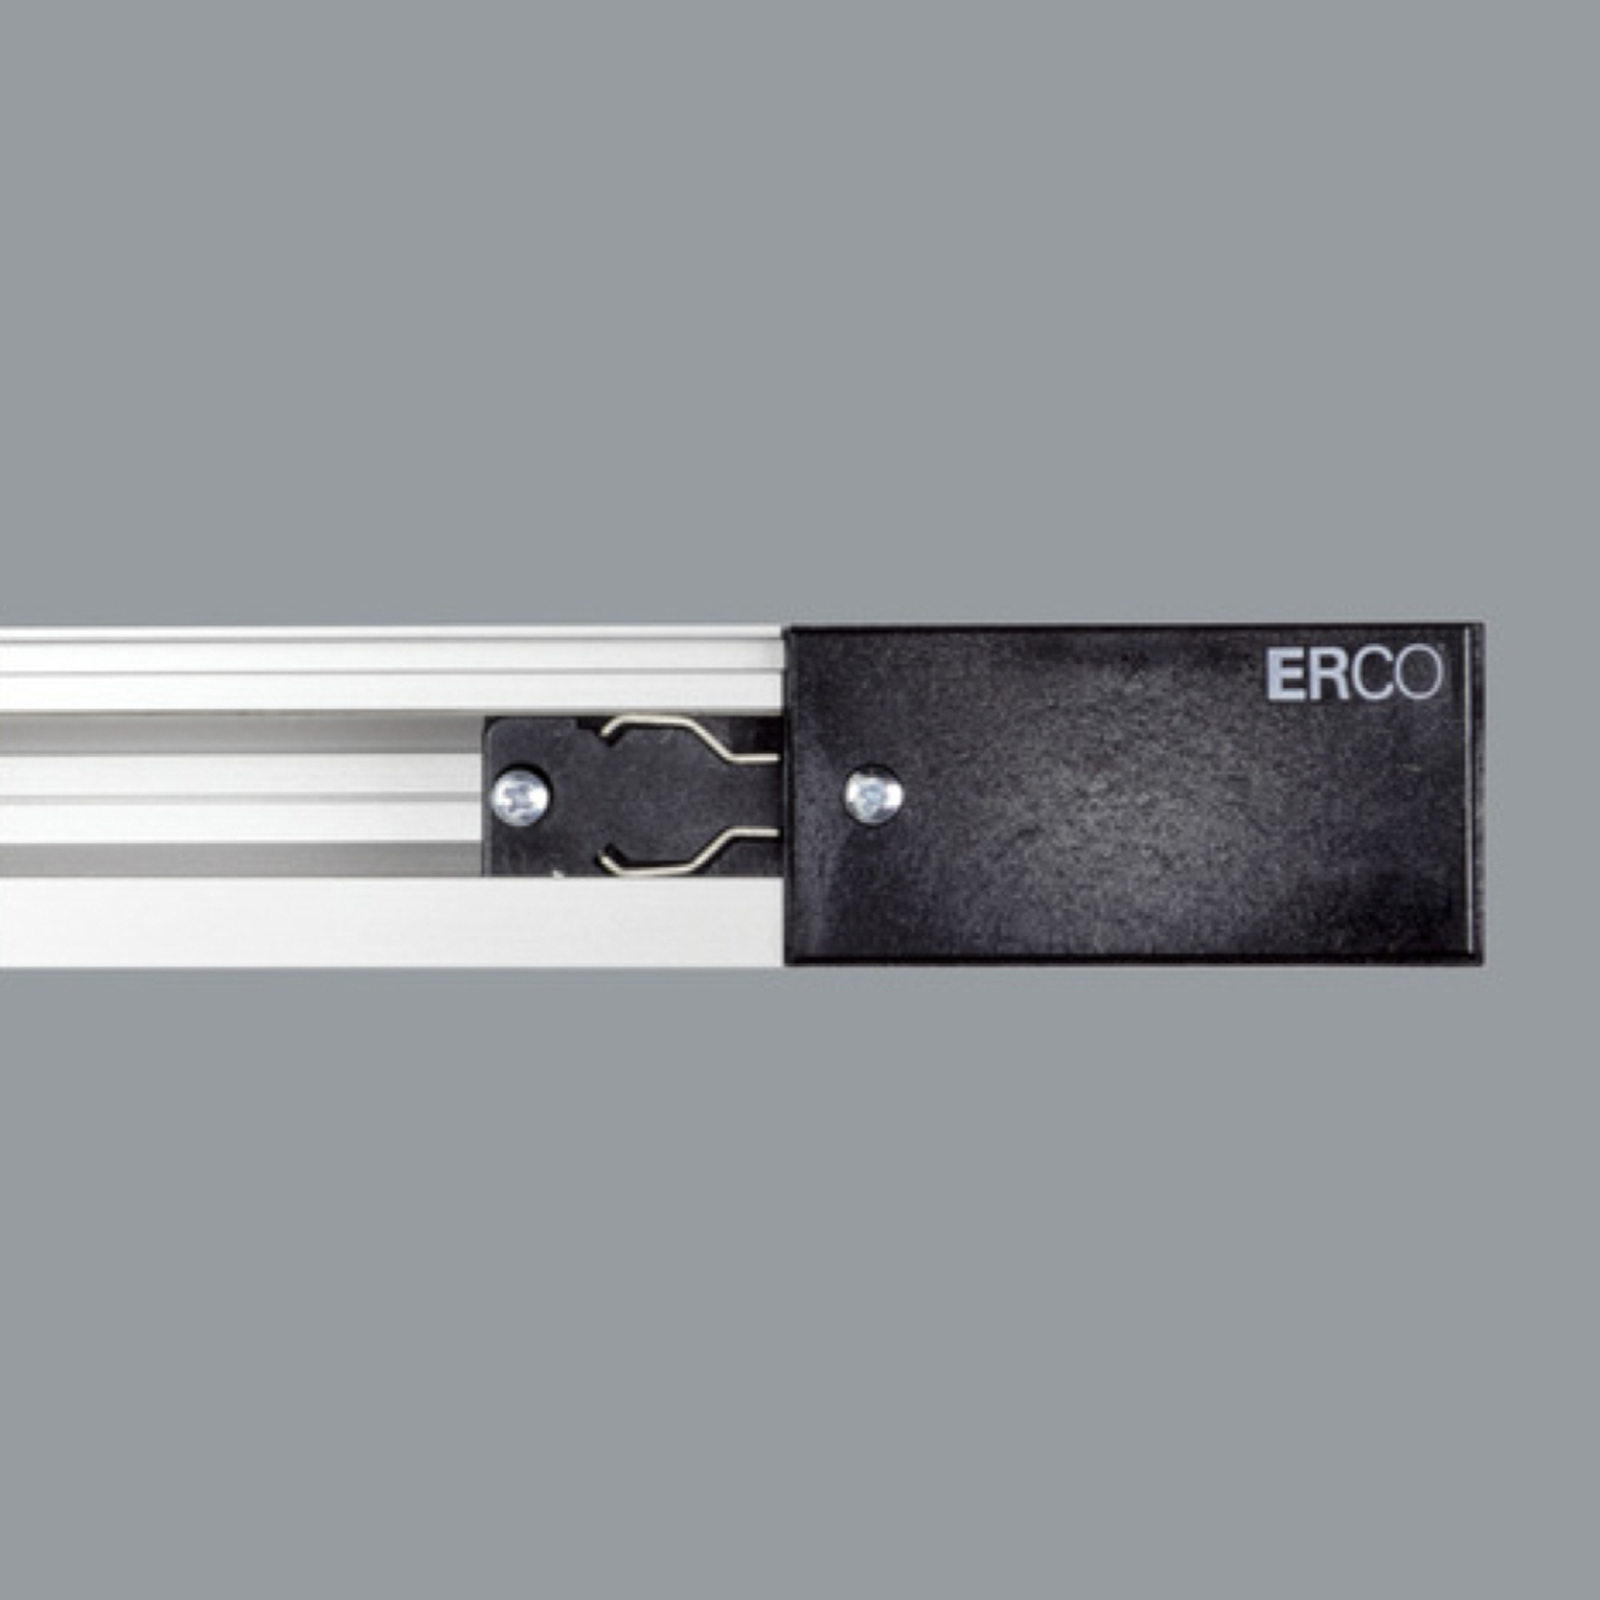 ERCO 3-faset forsyning jordledning højre, sort